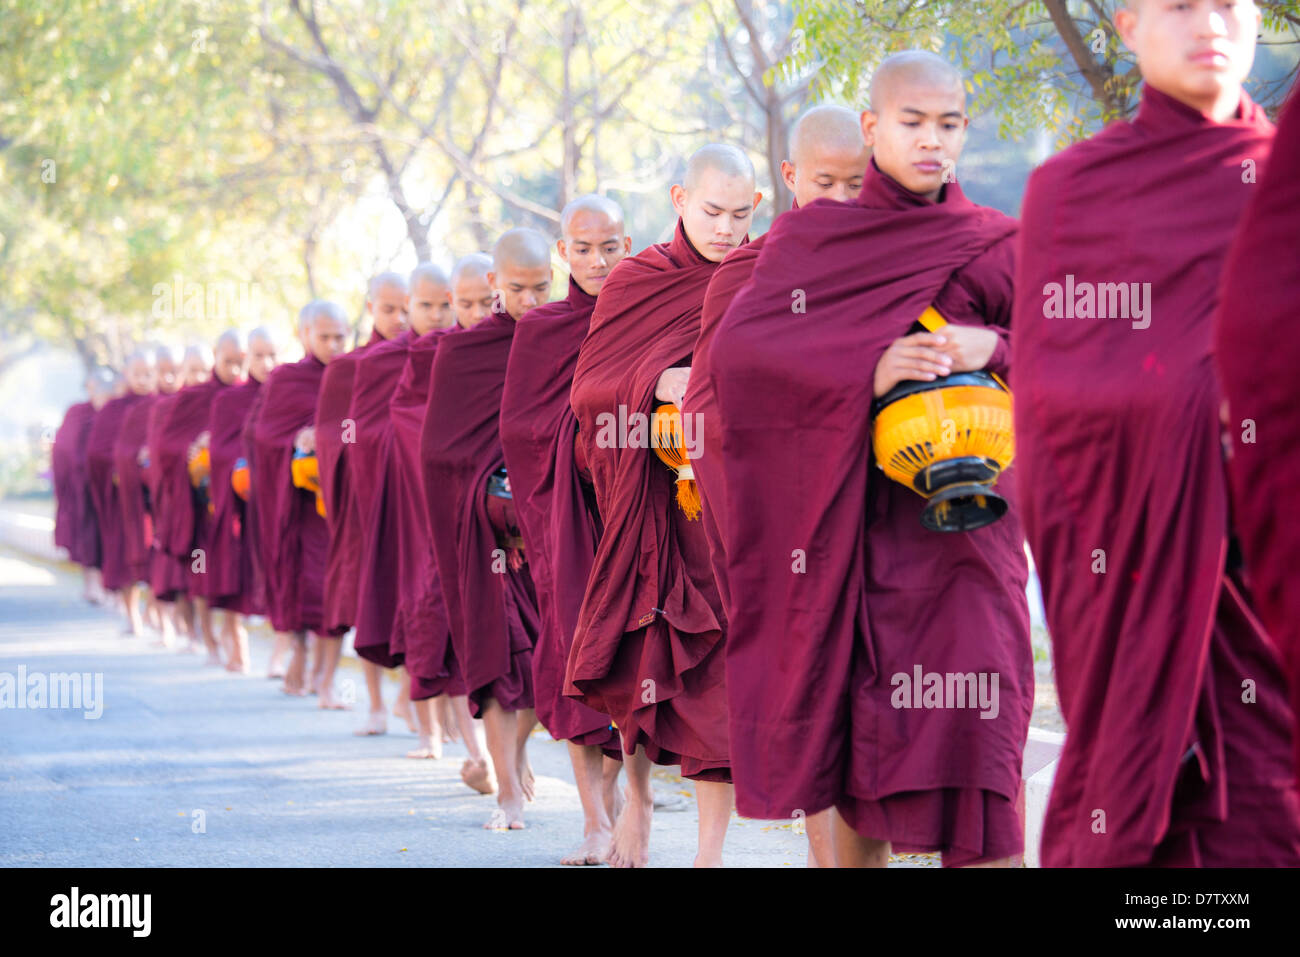 Les moines bouddhistes de marcher le long de la route pour recueillir des aumônes, près de Shwezigon Paya, Nyaung U, Bagan, Birmanie Banque D'Images